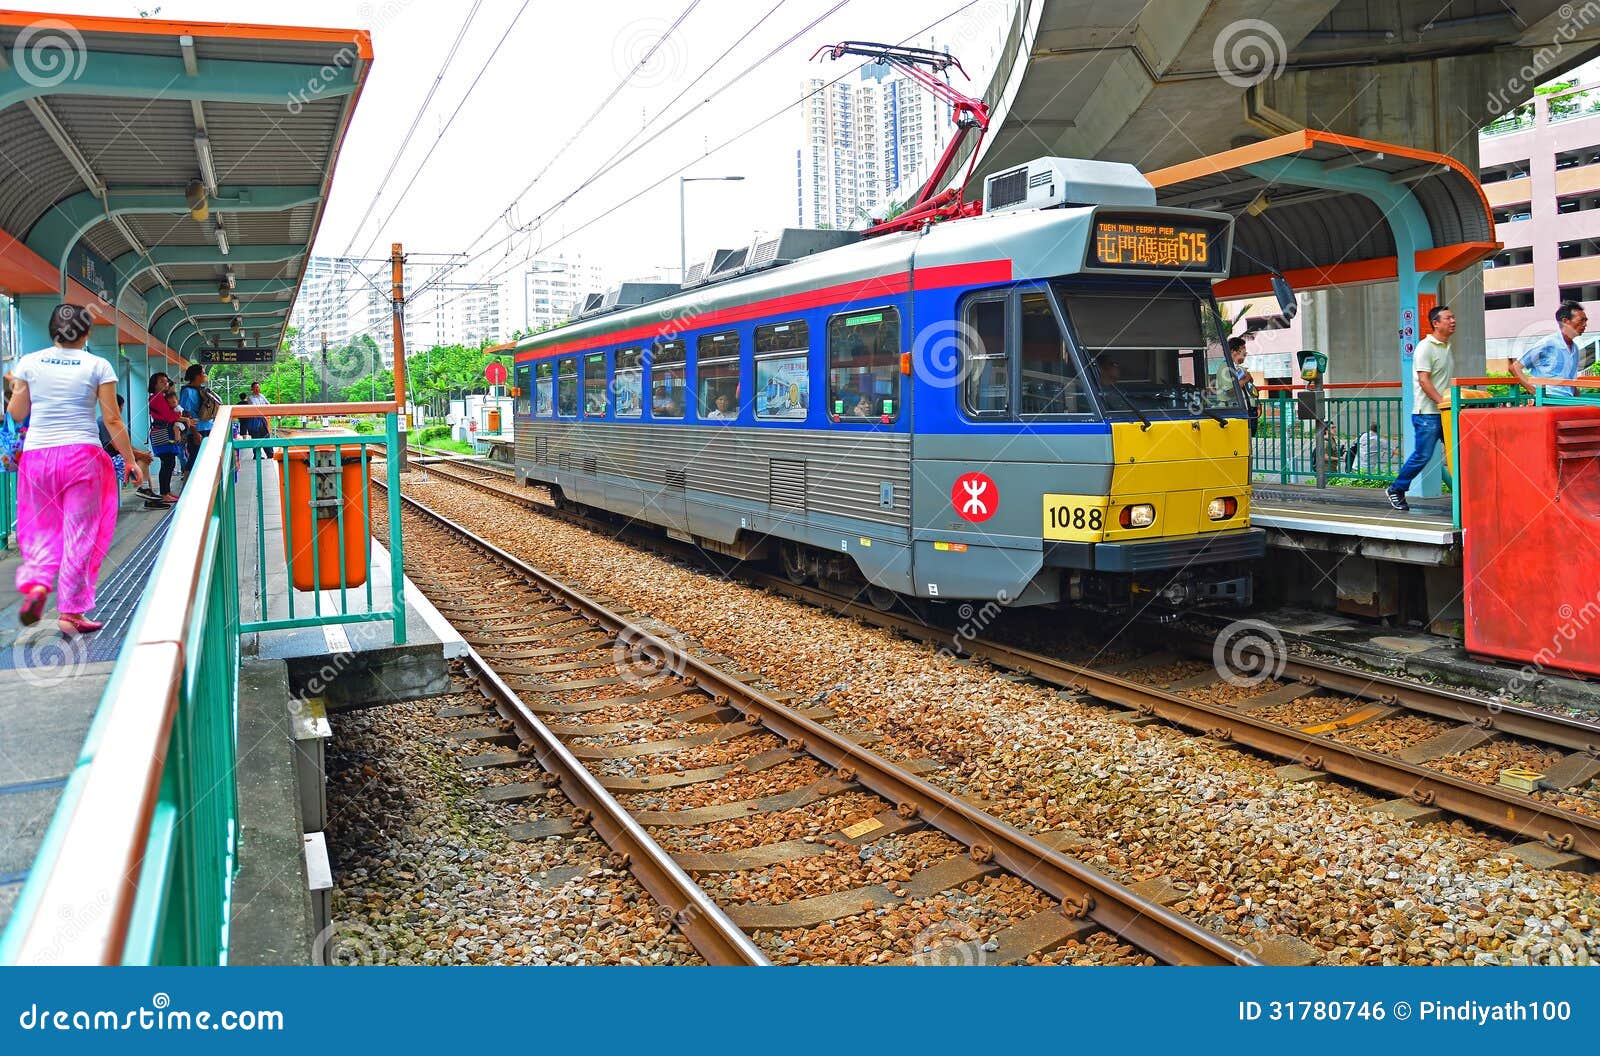 香港轻铁LRT火车 图库摄影片. 图片 包括有 人们, 香港, 背包, 通勤者, 运输, 铁路运输, 都市 - 86599407